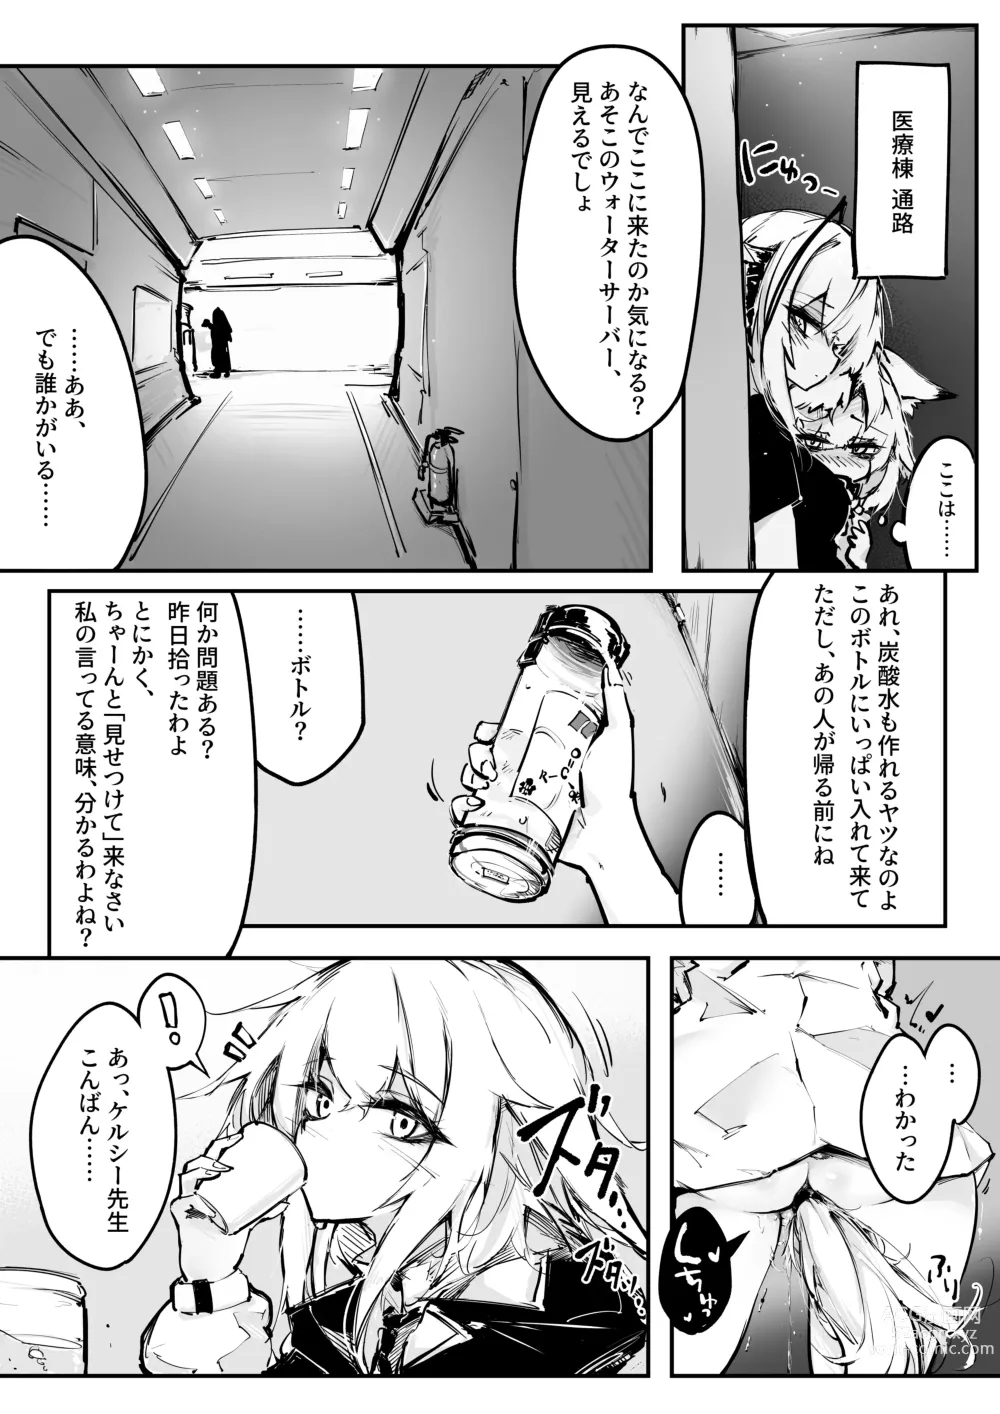 Page 6 of doujinshi Doujin_KxW